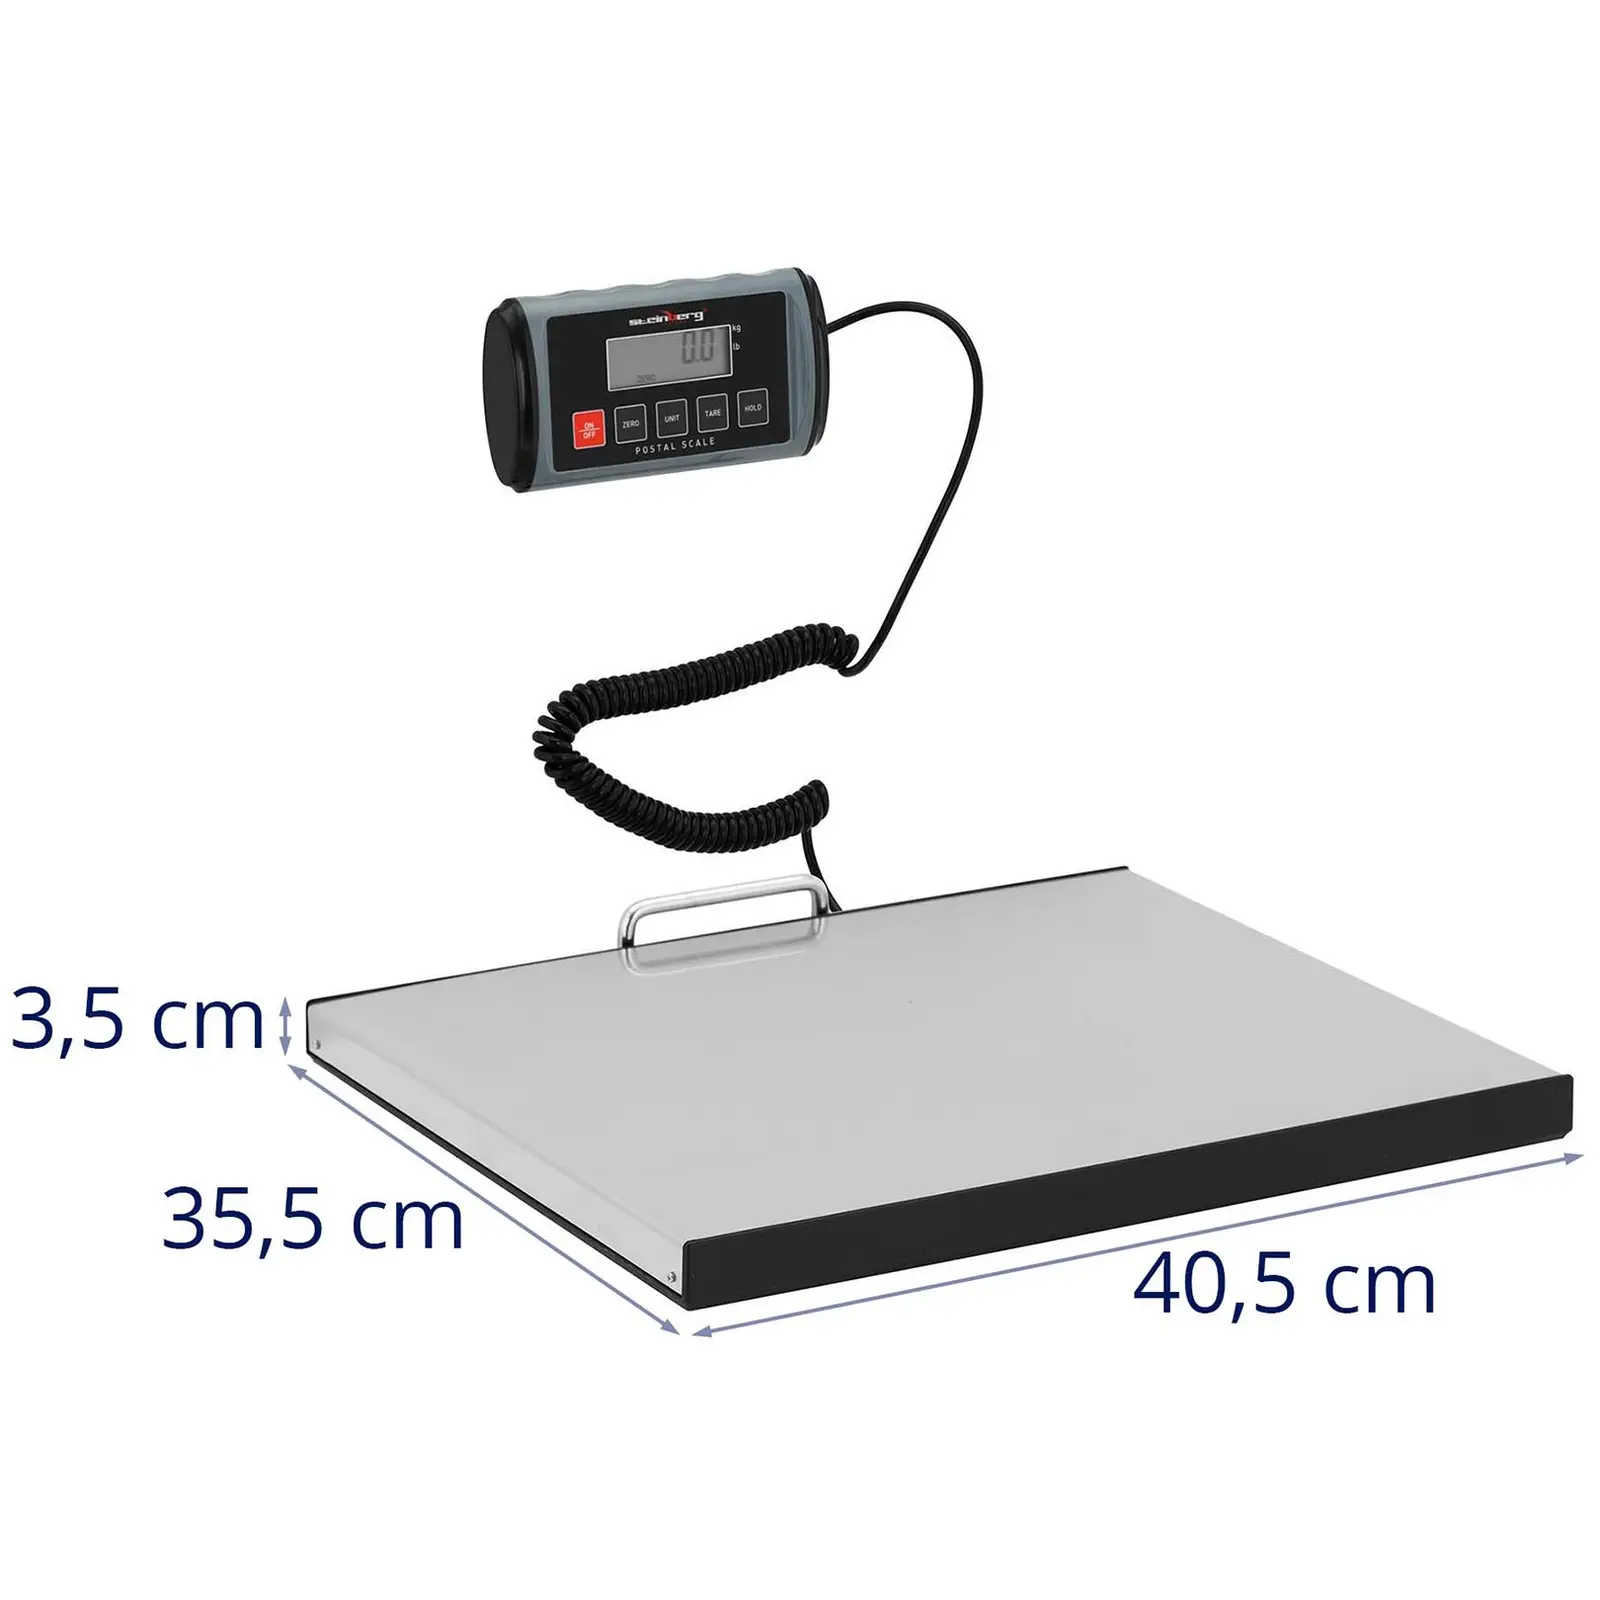 Waga paczkowa - 100 kg / 0,05 kg - 35,5 x 40,5 cm - zewn. wyświetlacz LCD